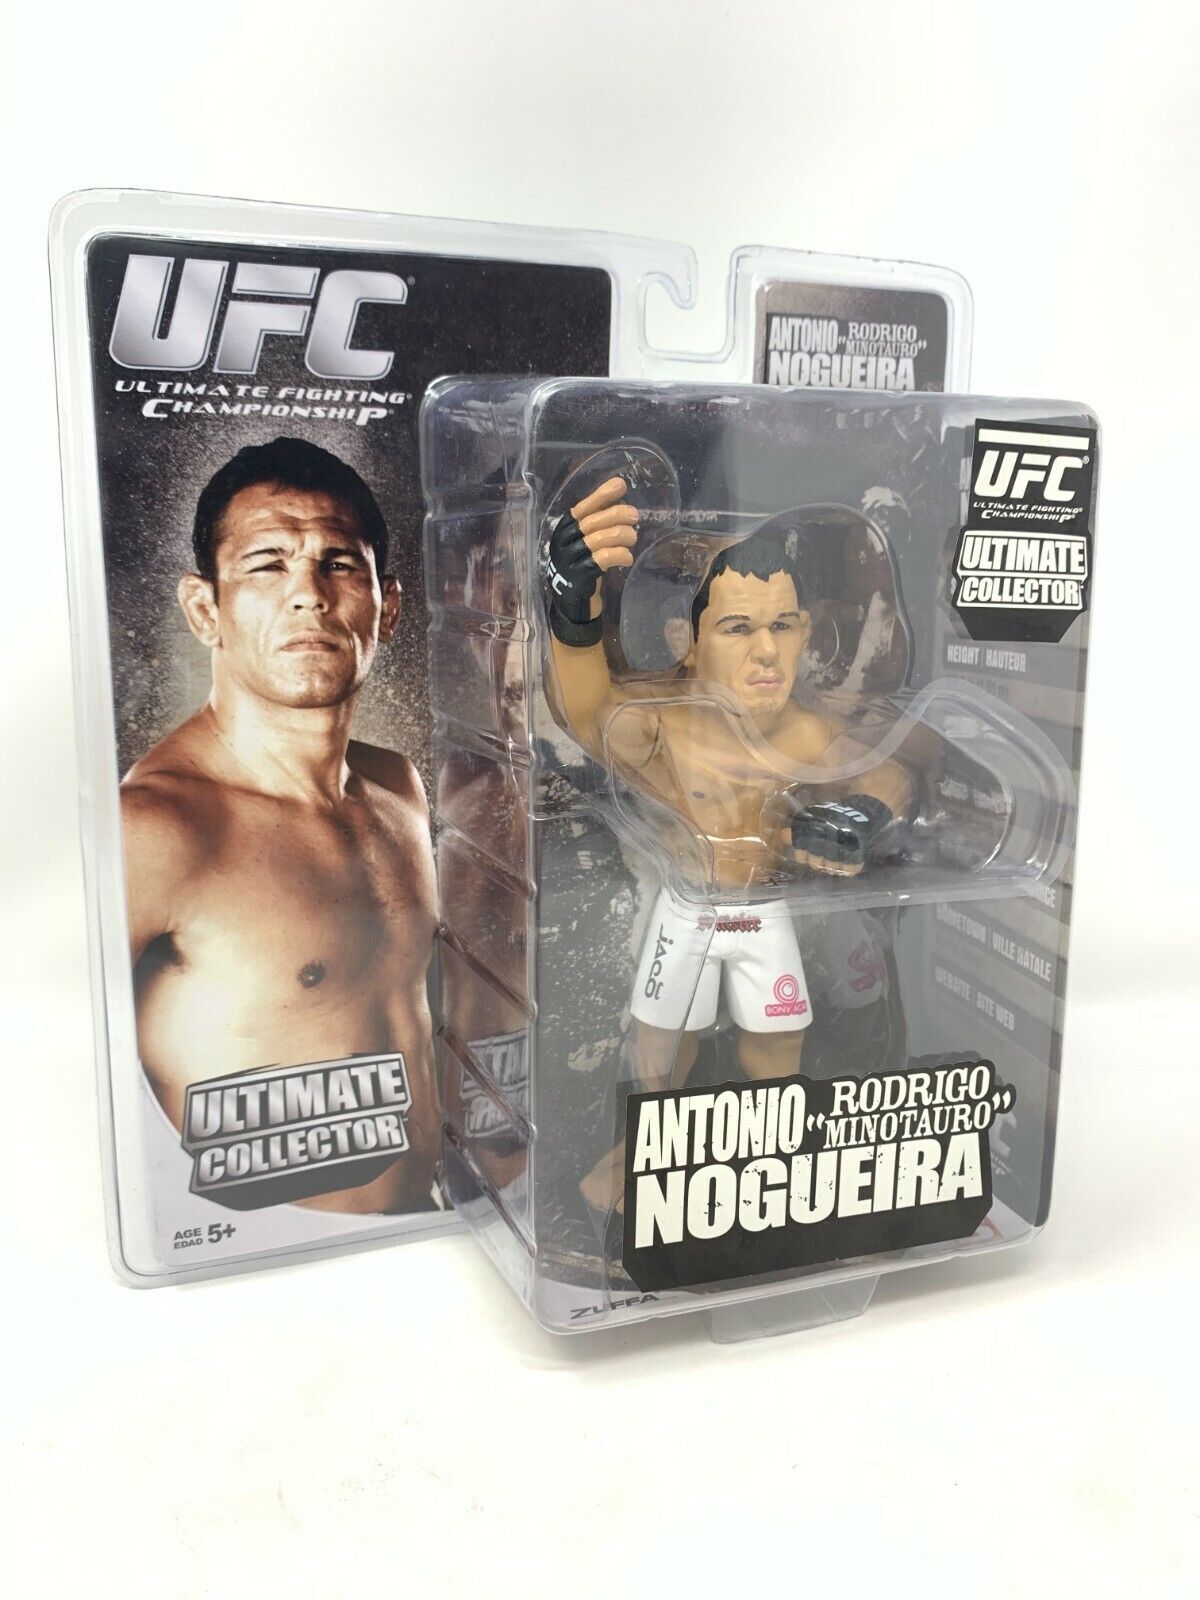 Round 5 UFC Antonio Rodrigo “Minotauro” Nogueira Action Figure